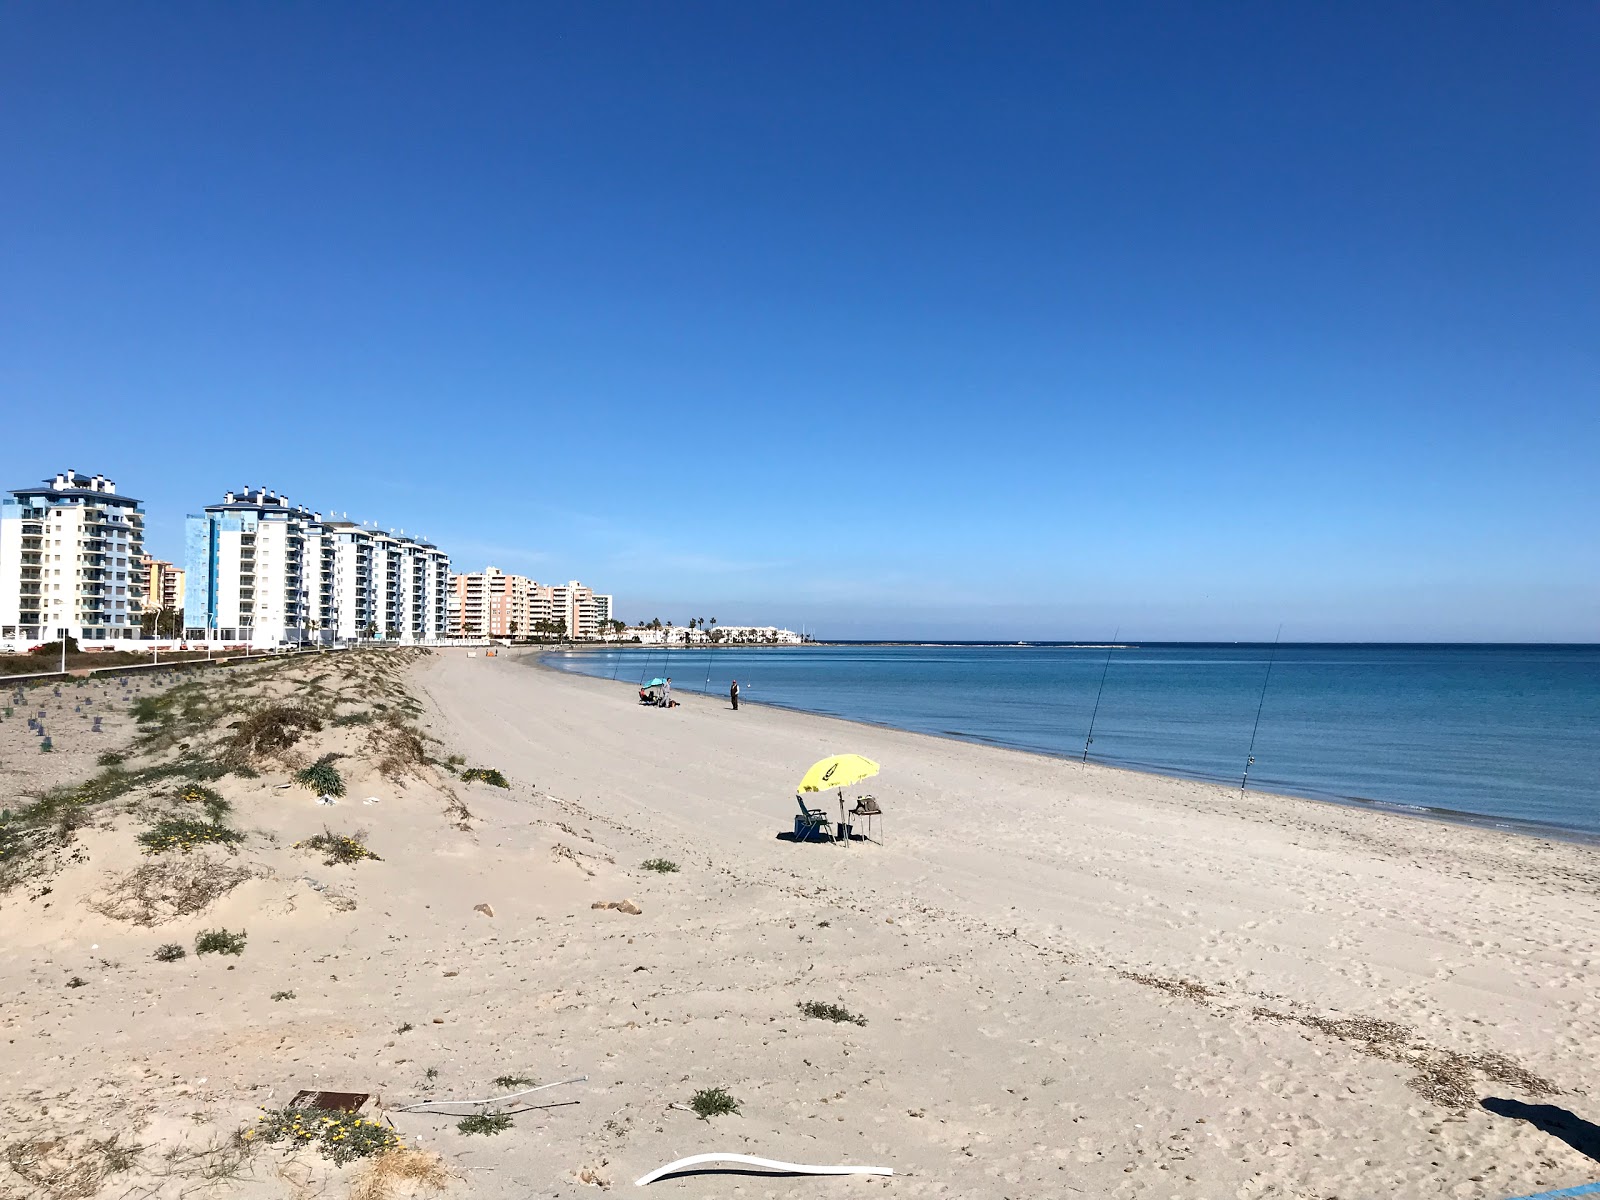 Playa del Pudrimel'in fotoğrafı parlak kum yüzey ile